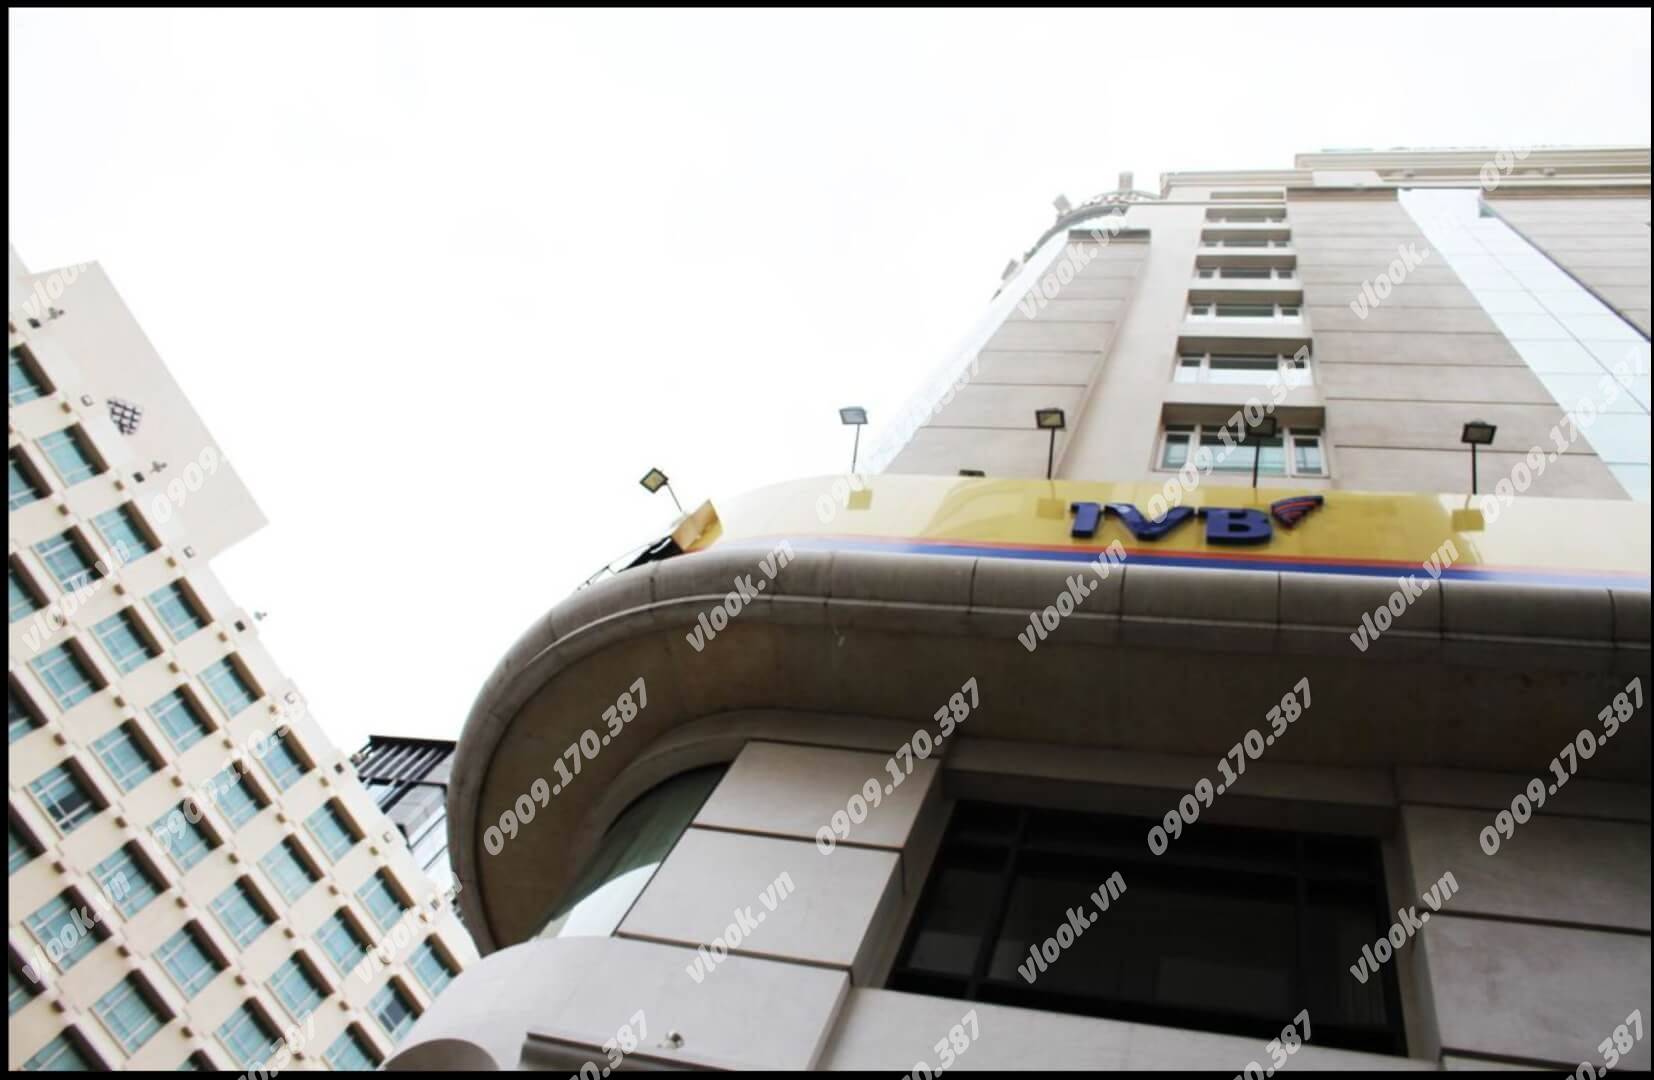 Cao ốc cho thuê văn phòng Cityhouse - The World Center, Phạm Hồng Thái, Quận 1 - vlook.vn